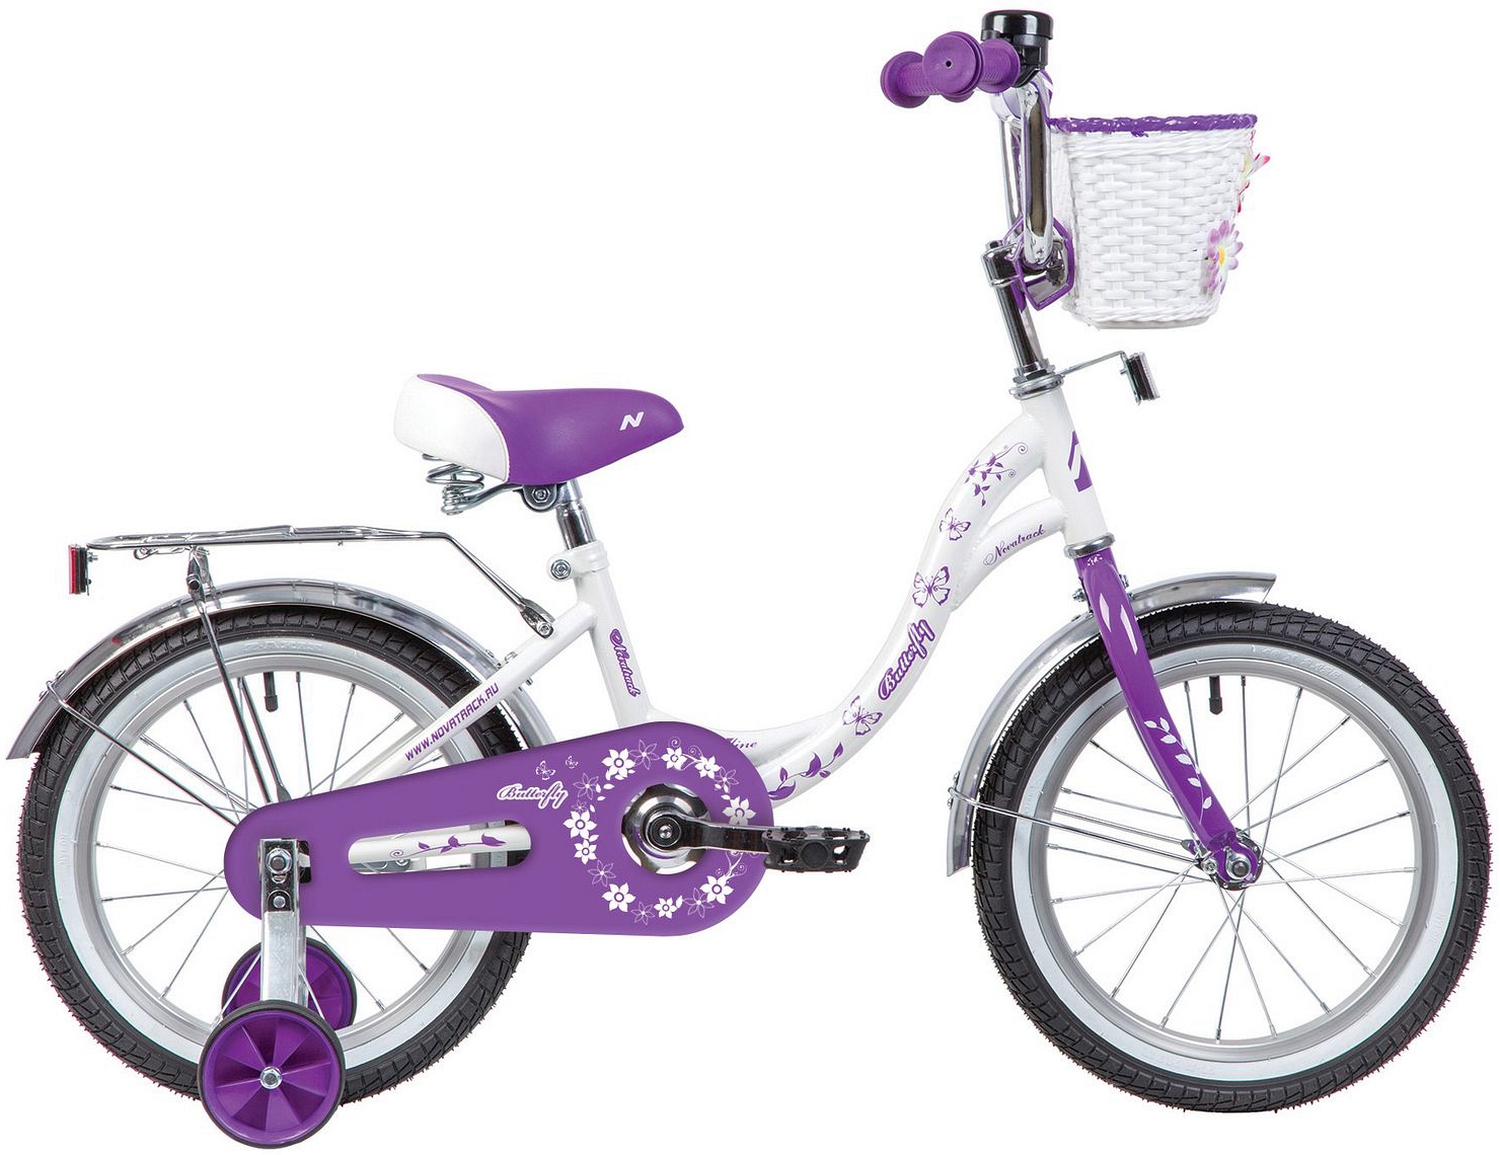  Отзывы о Детском велосипеде Novatrack Butterfly 14 2020